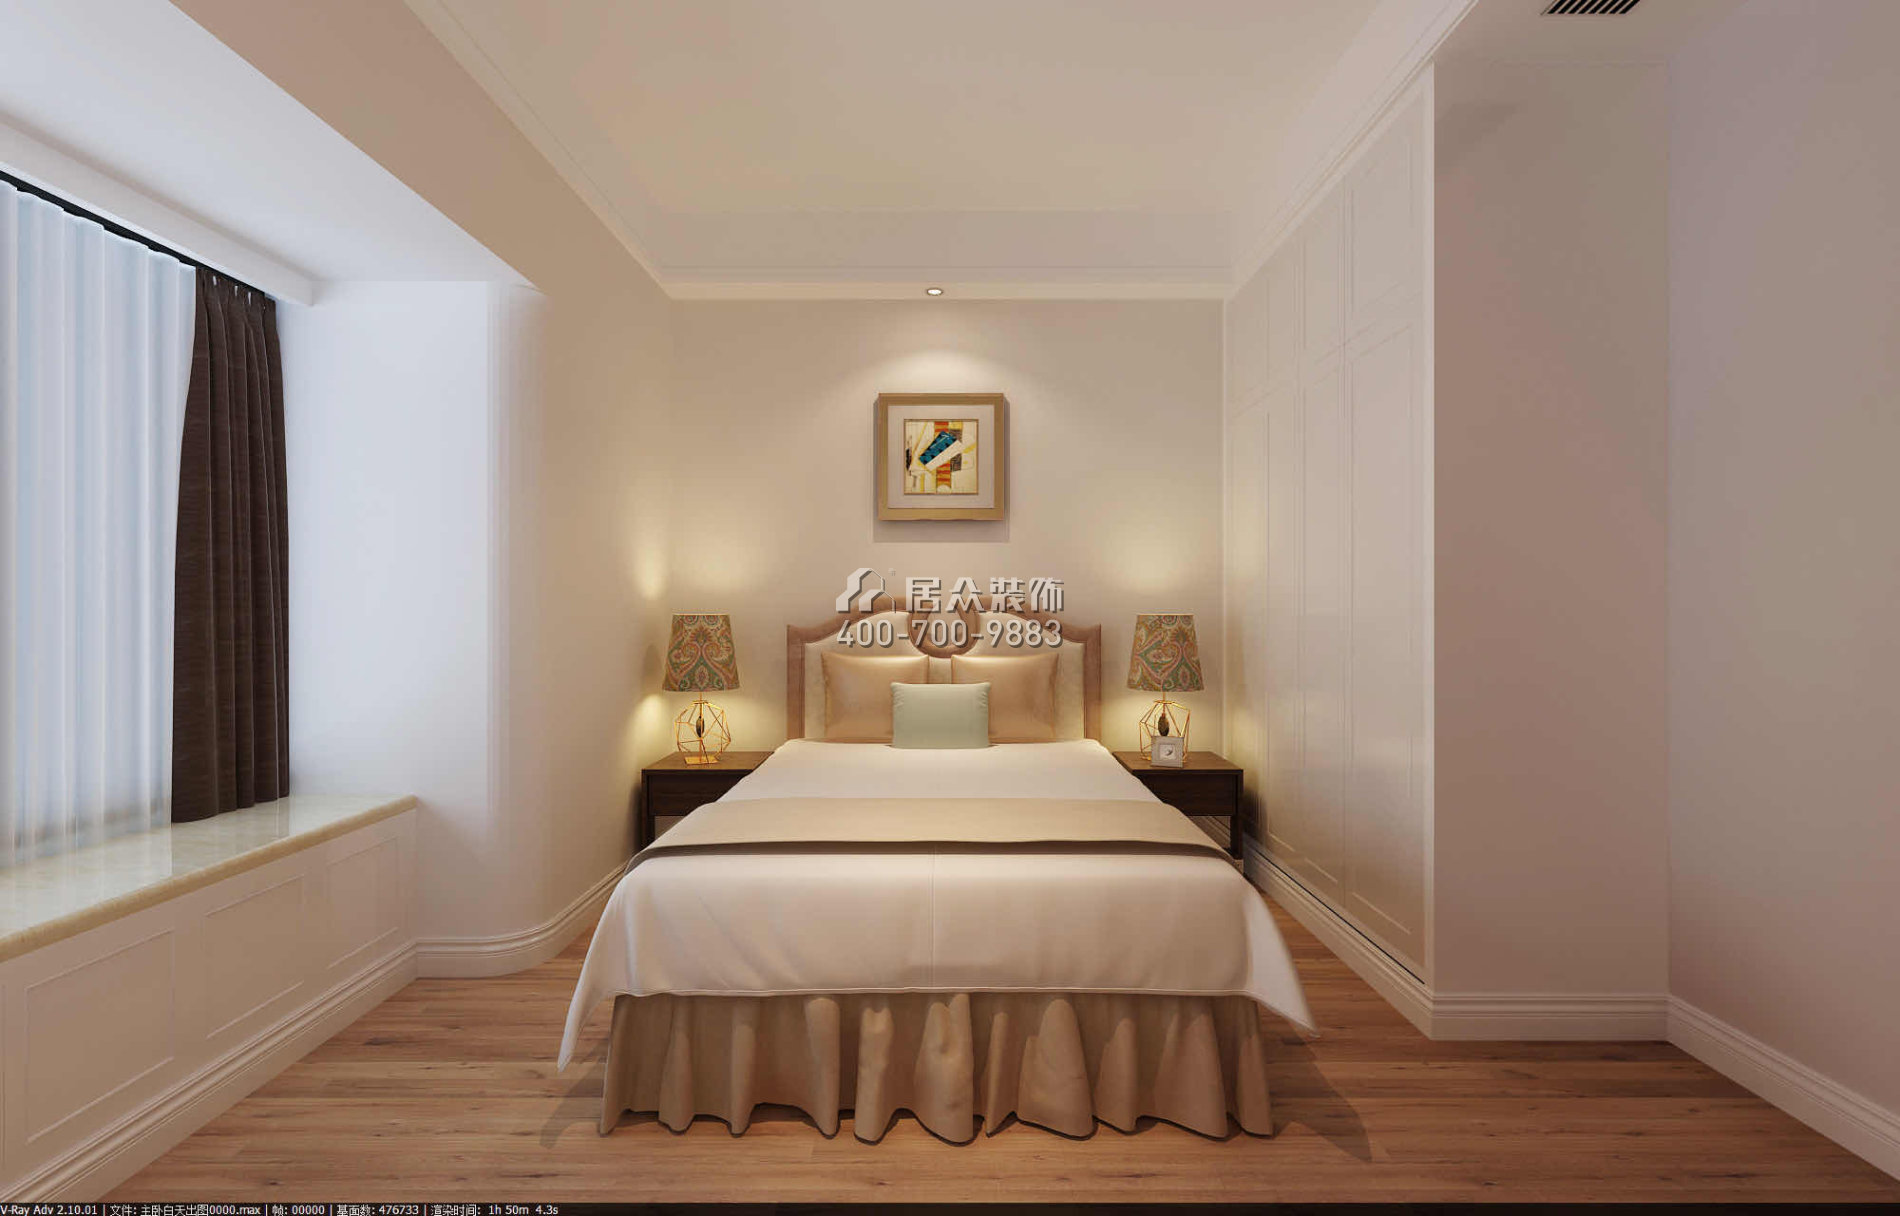 東景花園128平方米現代簡約風格平層戶型臥室裝修效果圖